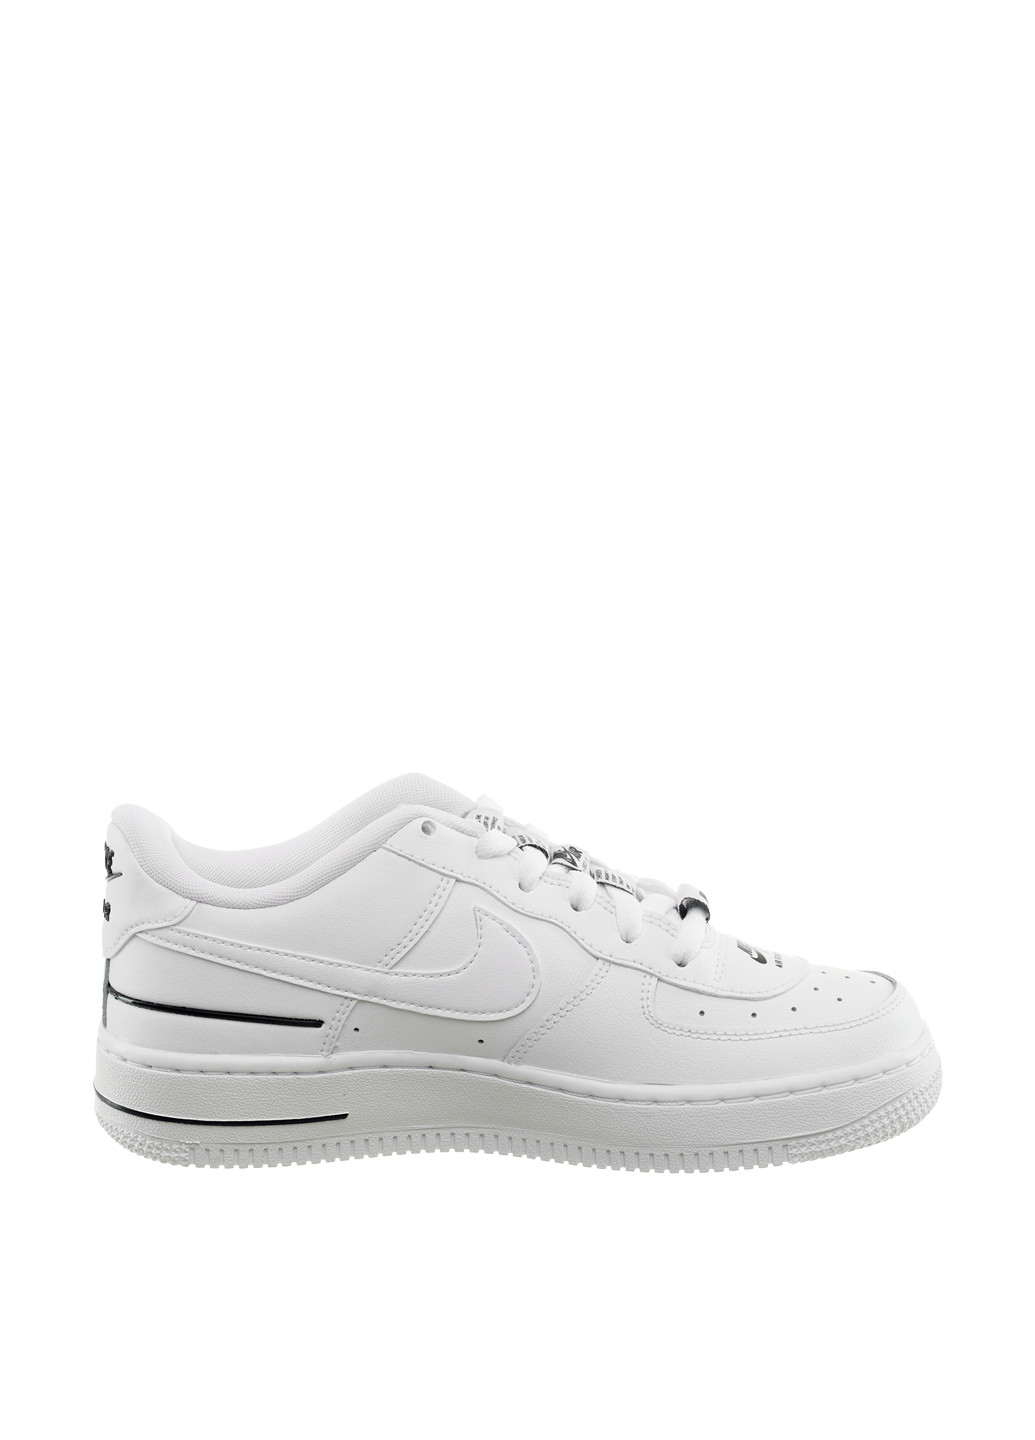 Белые демисезонные кроссовки cj4092-100_2024 Nike Air Force 1 LV8 3 Gs